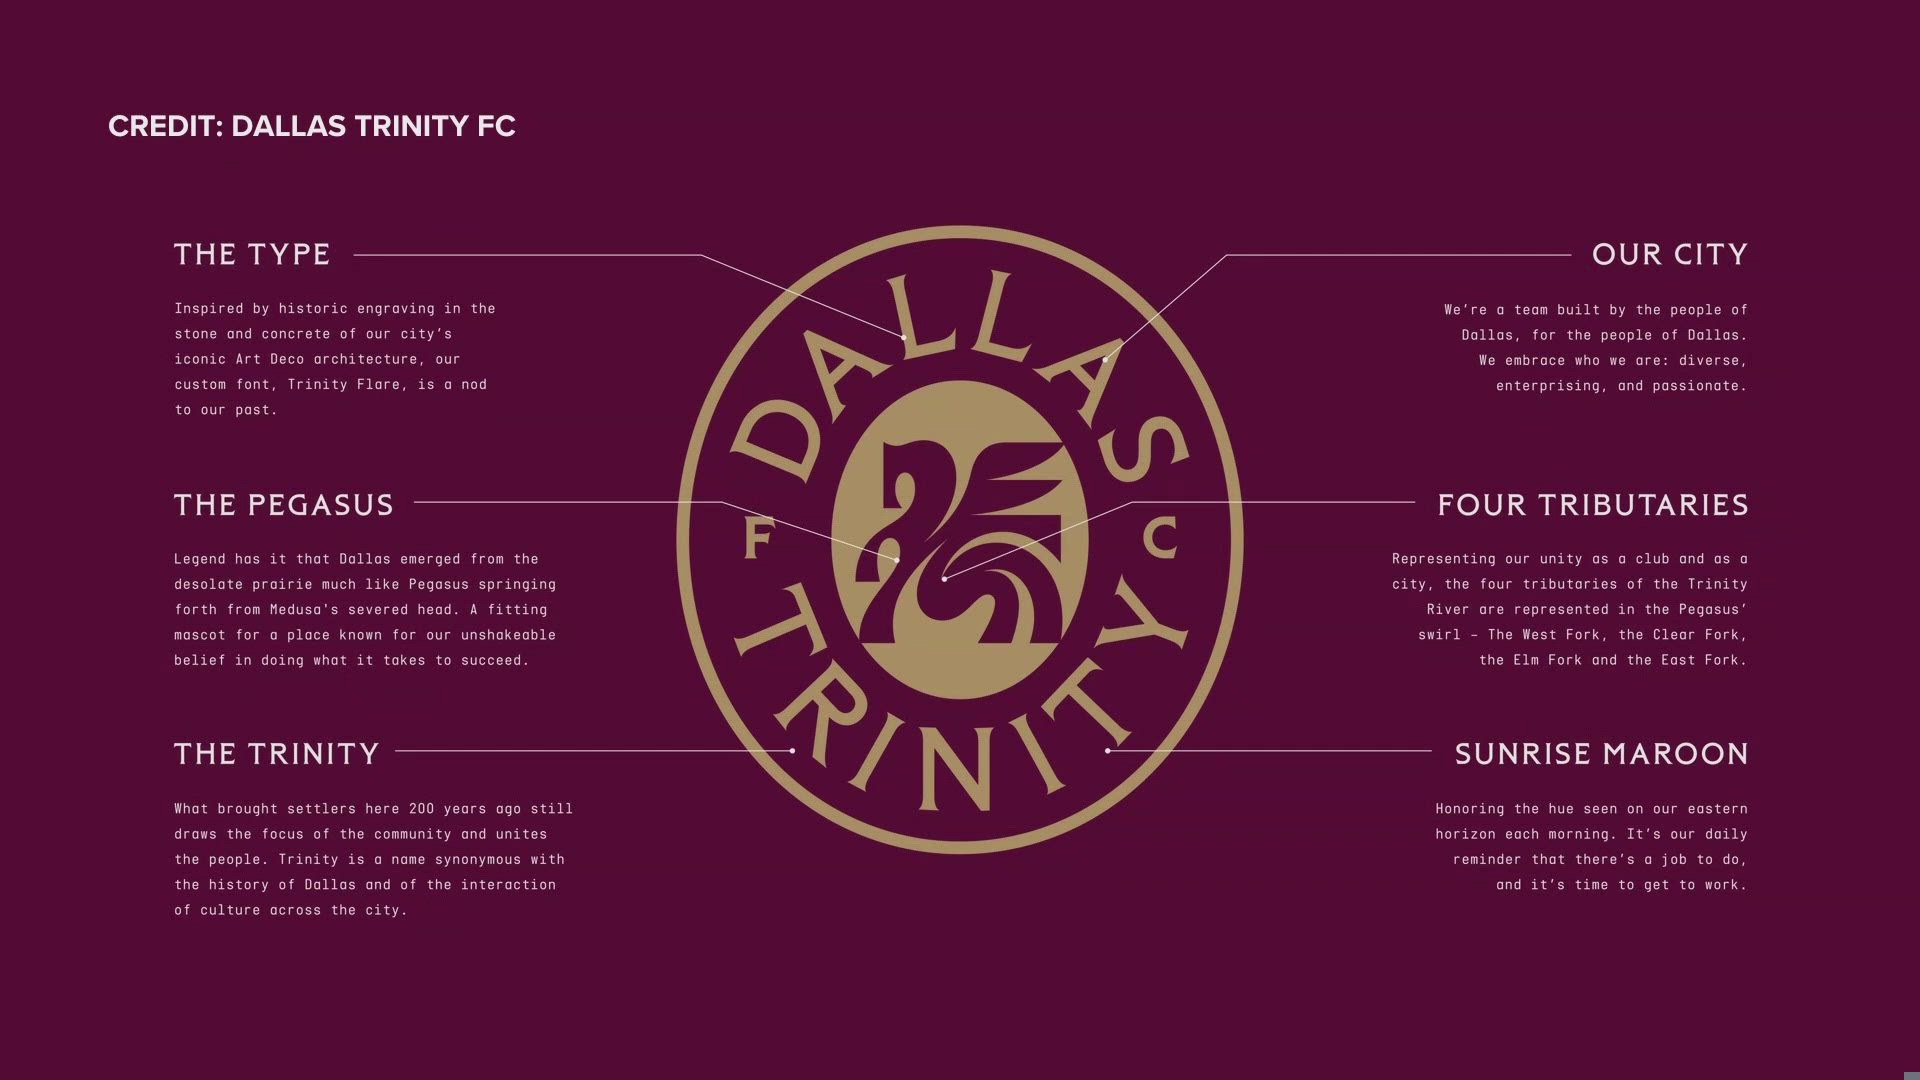 Welcome, Dallas Trinity FC!